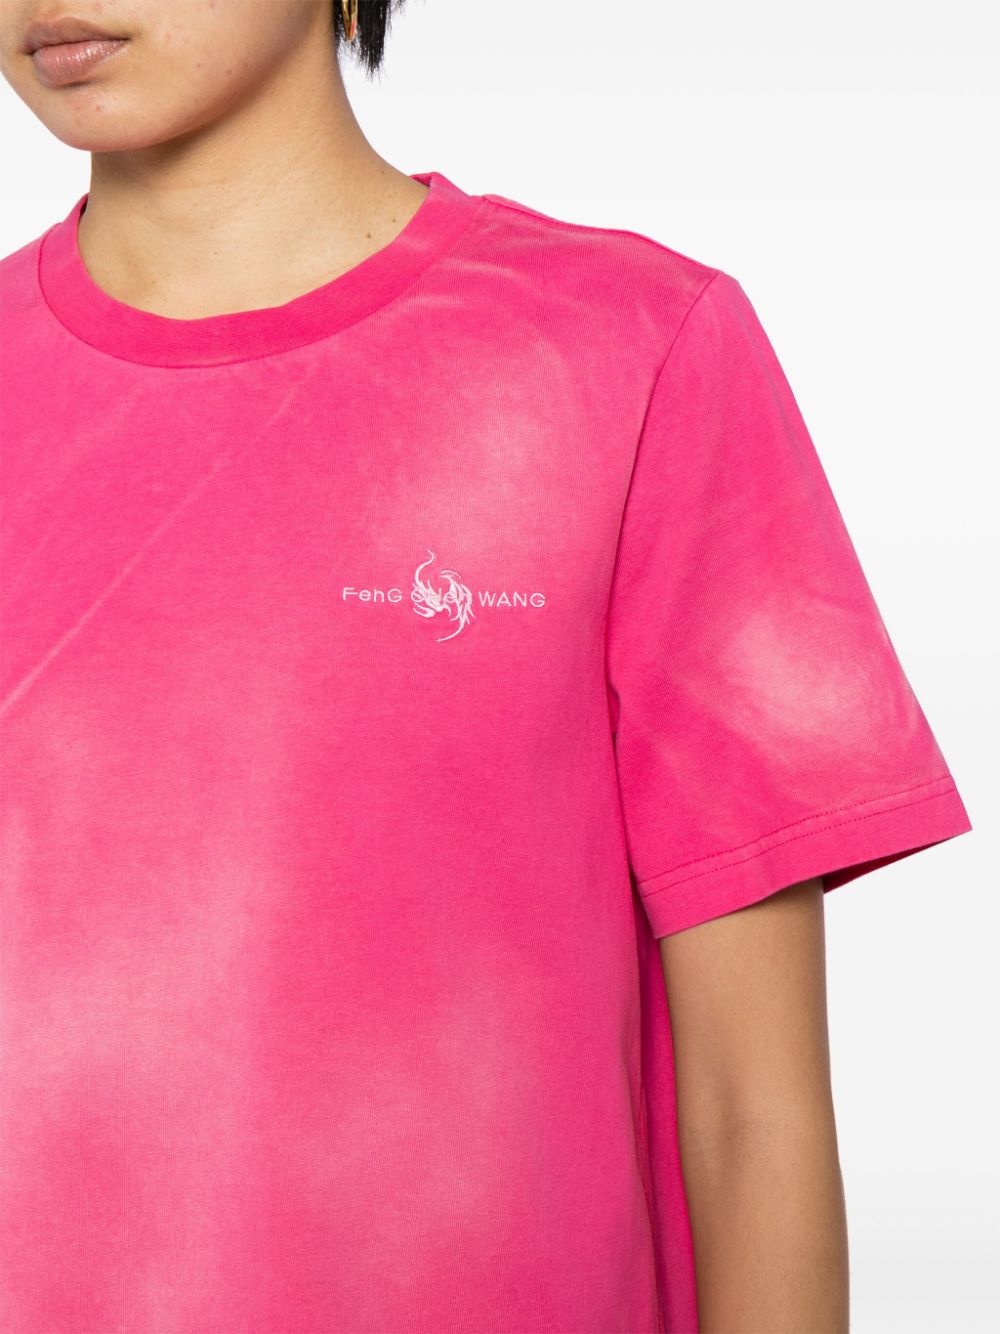 Feng Chen Wang T-shirt met tie-dye print Roze